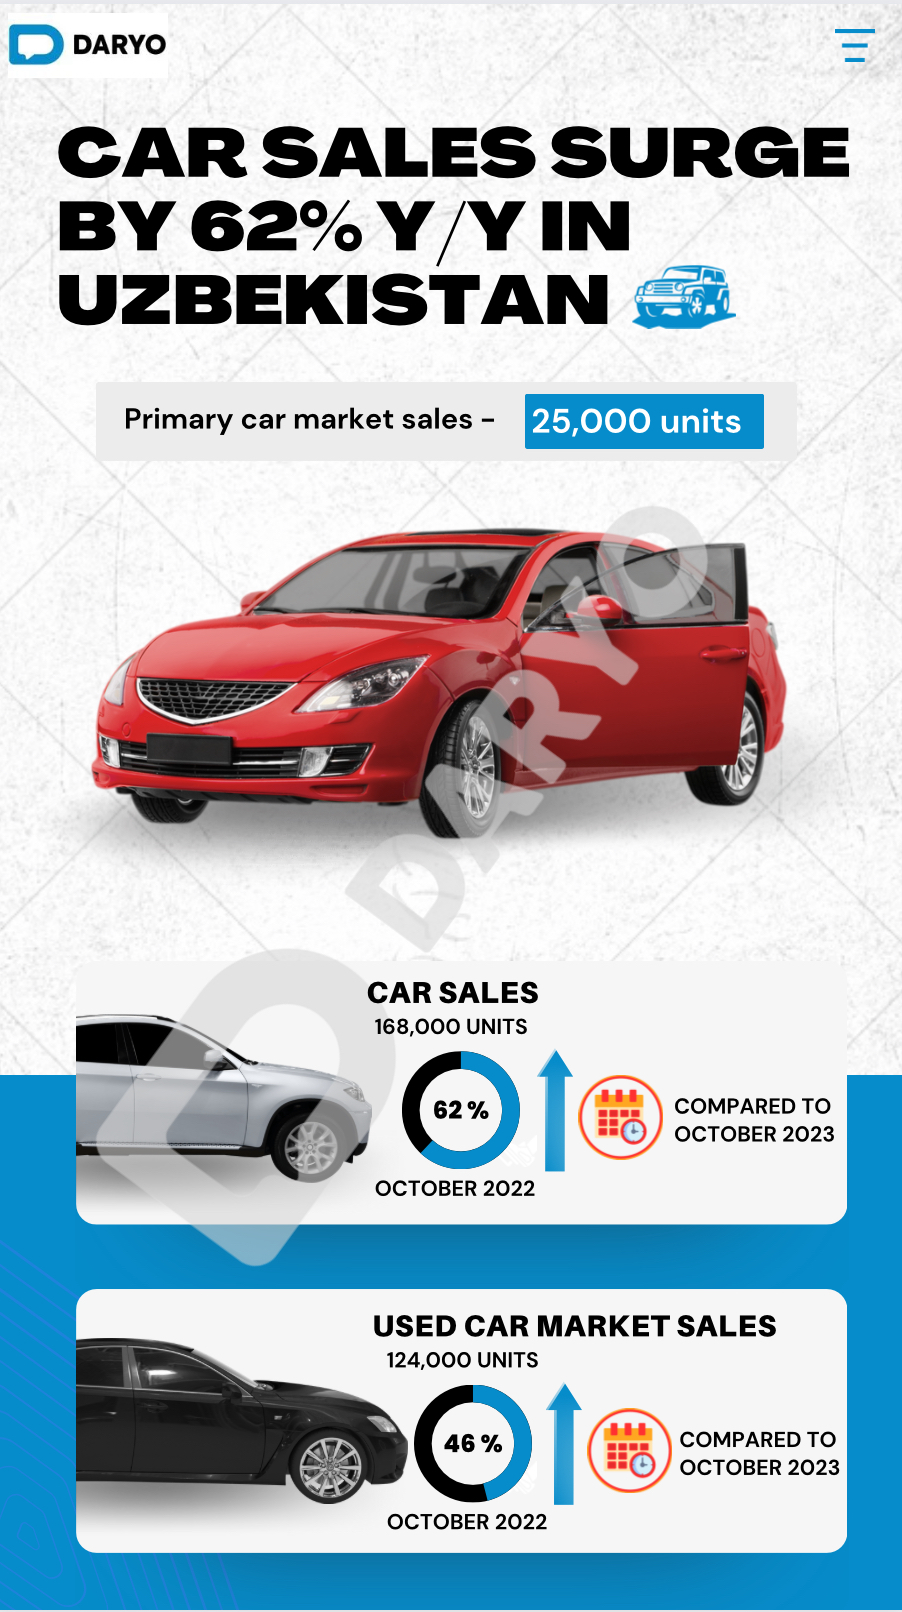 Car sales surge by 62% y.o.y in Uzbekistan, CERR reports 